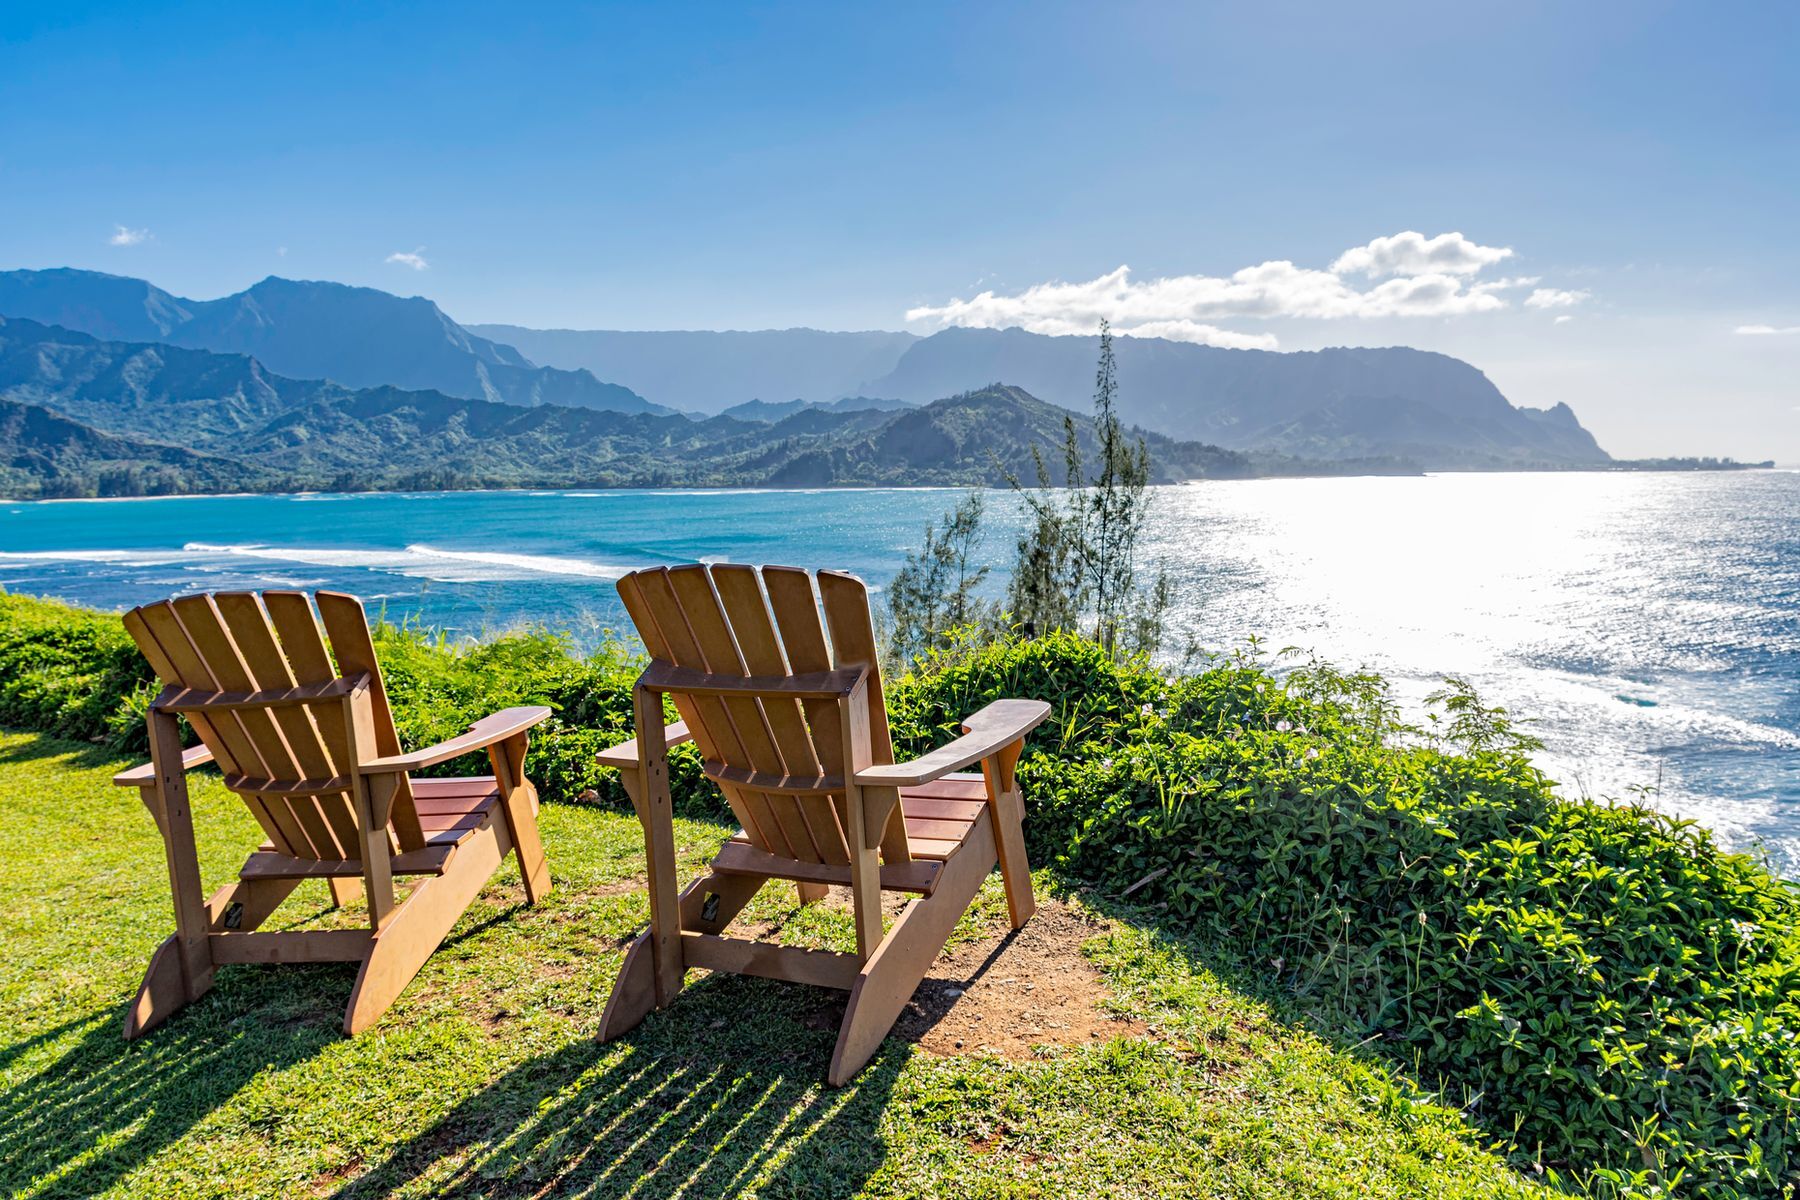 De tous les signes du zodiaque, les Cancers sont les plus susceptibles de profiter d’un séjour de vacances à la maison; les crabes aiment rester dans leur coquille. Cependant, le deuxième meilleur endroit après la maison pour se sentir chez soi, c’est à <a href="https://www.viator.com/blog/Star-Sign-Travel-Top-Cancer-Vacation-Destinations/l98963" rel="noreferrer noopener">Kauai, à Hawaï</a>. Sur l’île, ce signe d’eau pourra profiter de l’atmosphère côtière et de toutes les beautés et les activités qu’on y pratique comme <a href="https://www.gohawaii.com/fr/islands/kauai/things-to-do" rel="noreferrer noopener">le kayak et la plongée avec masque et tuba</a>, notamment.